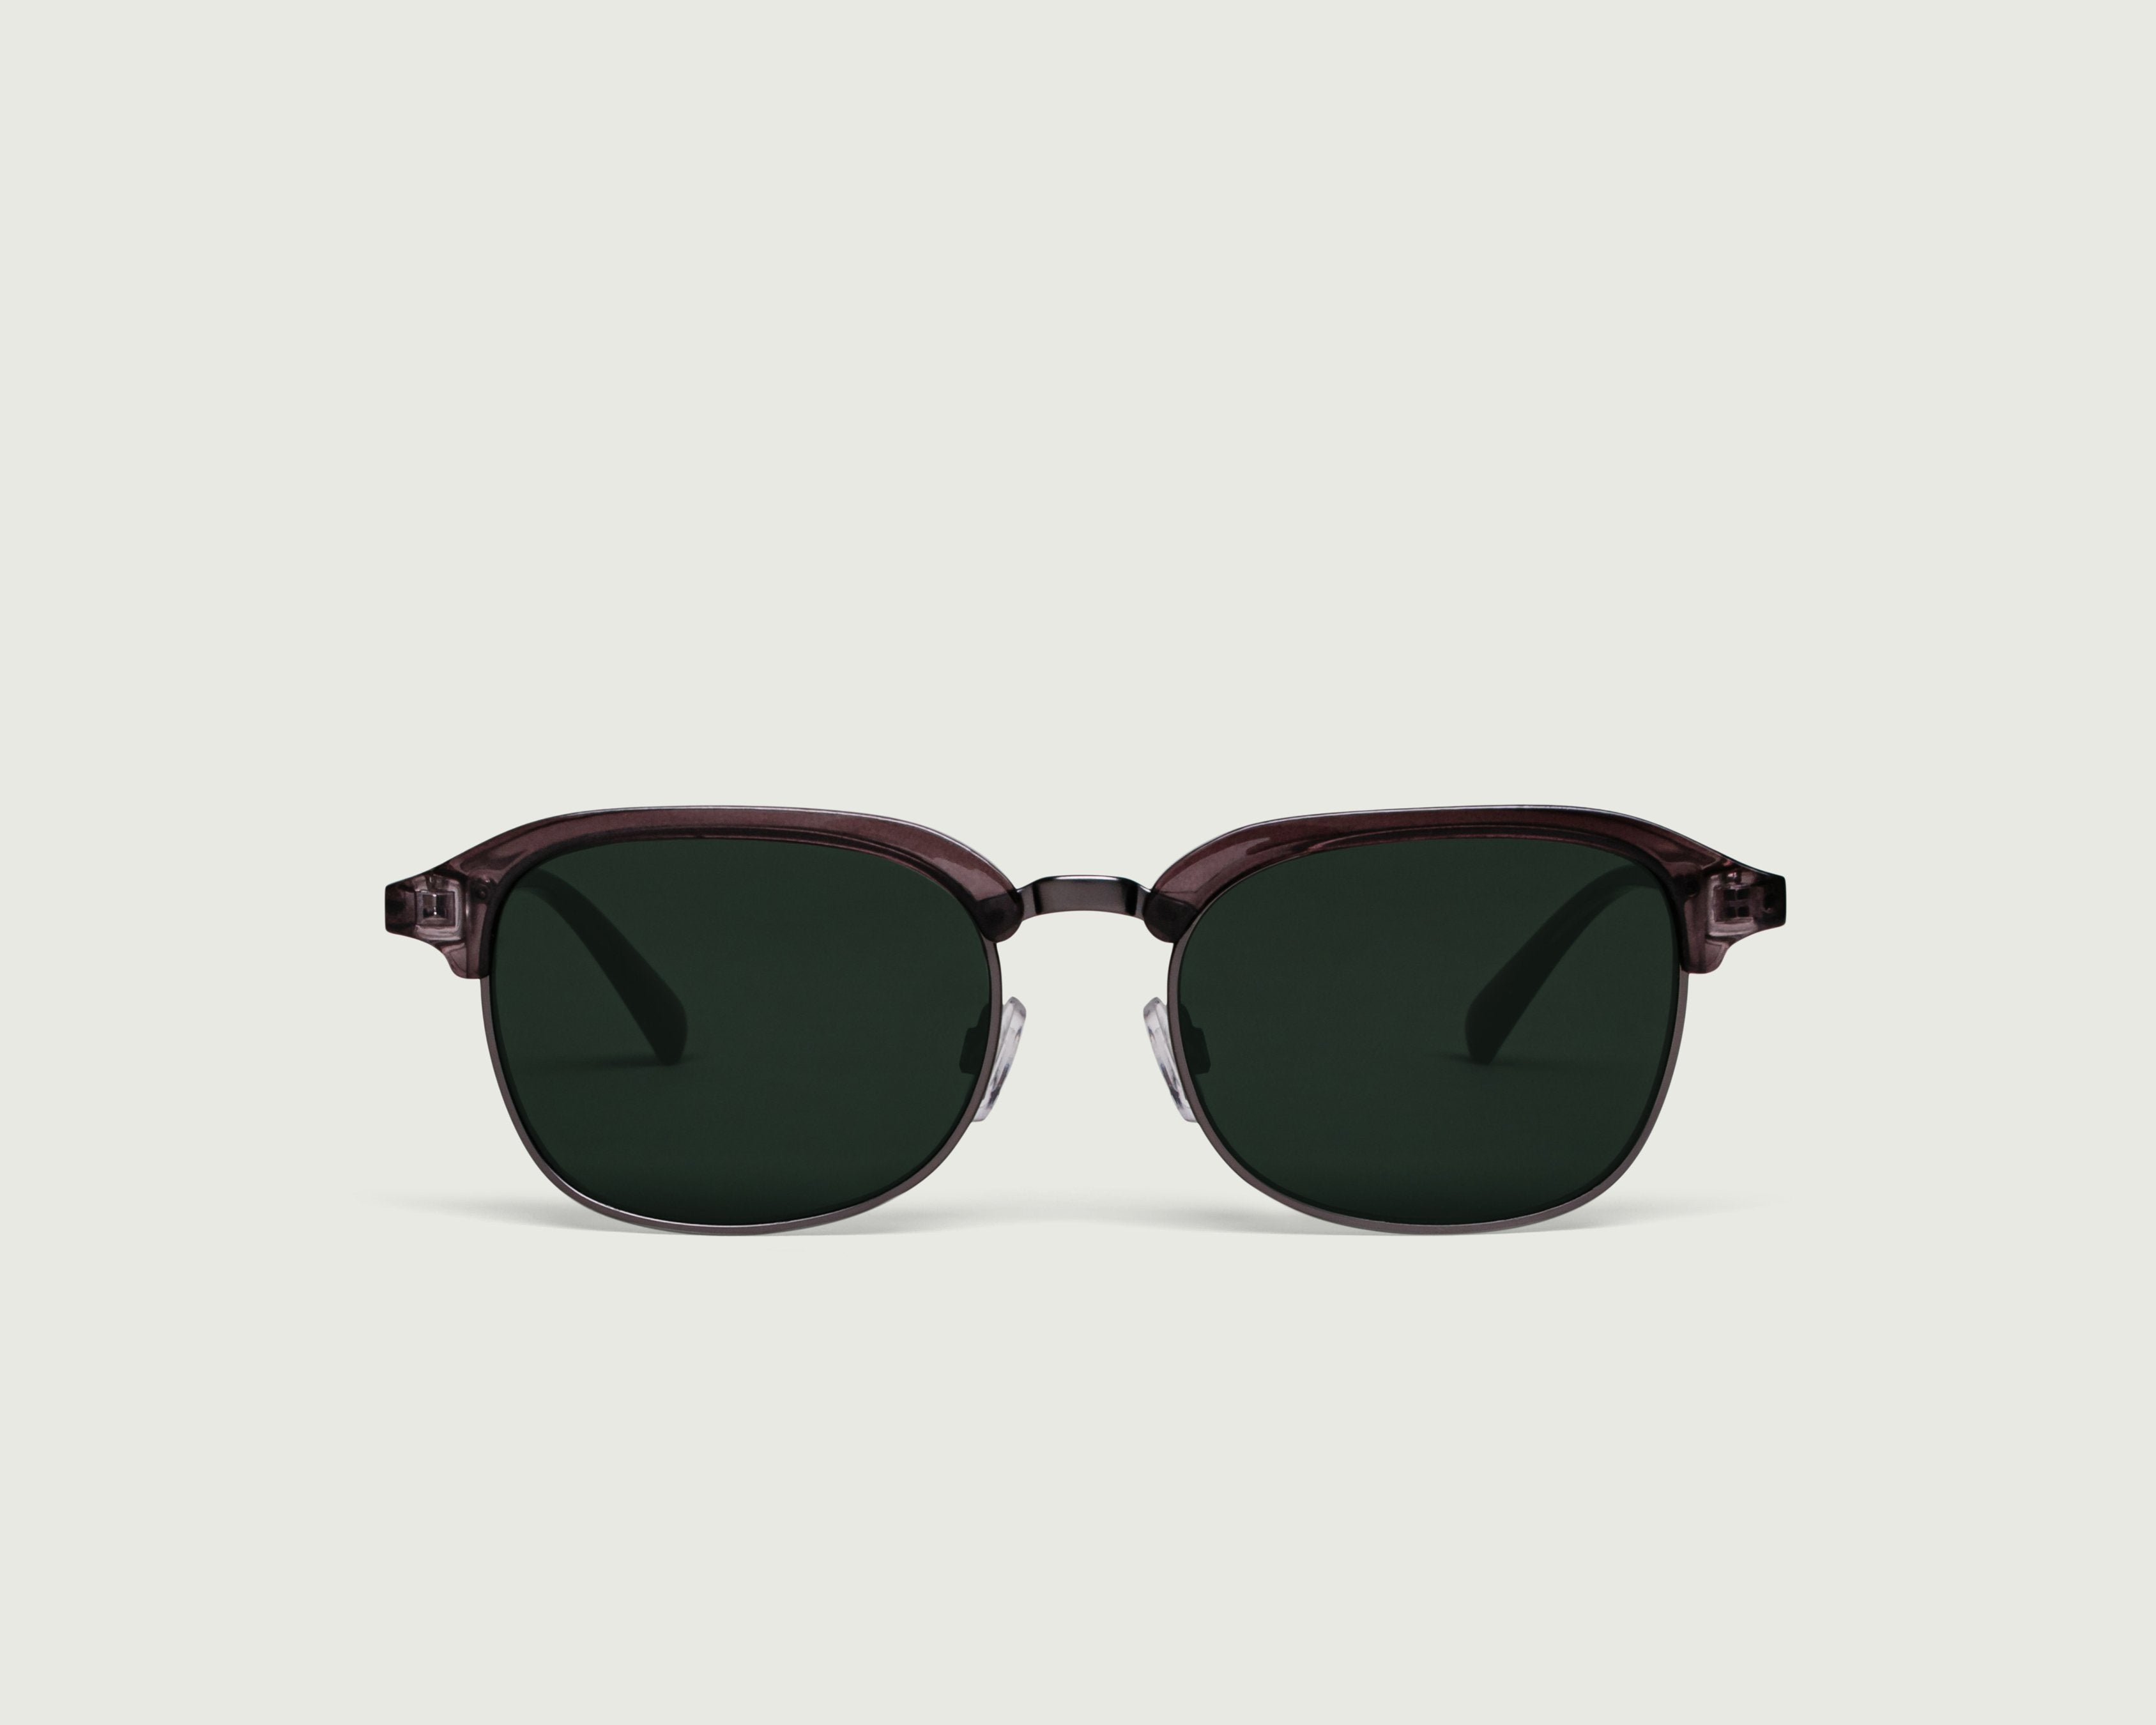 Graphite::Castro Sunglasses browline brown plastic metal front